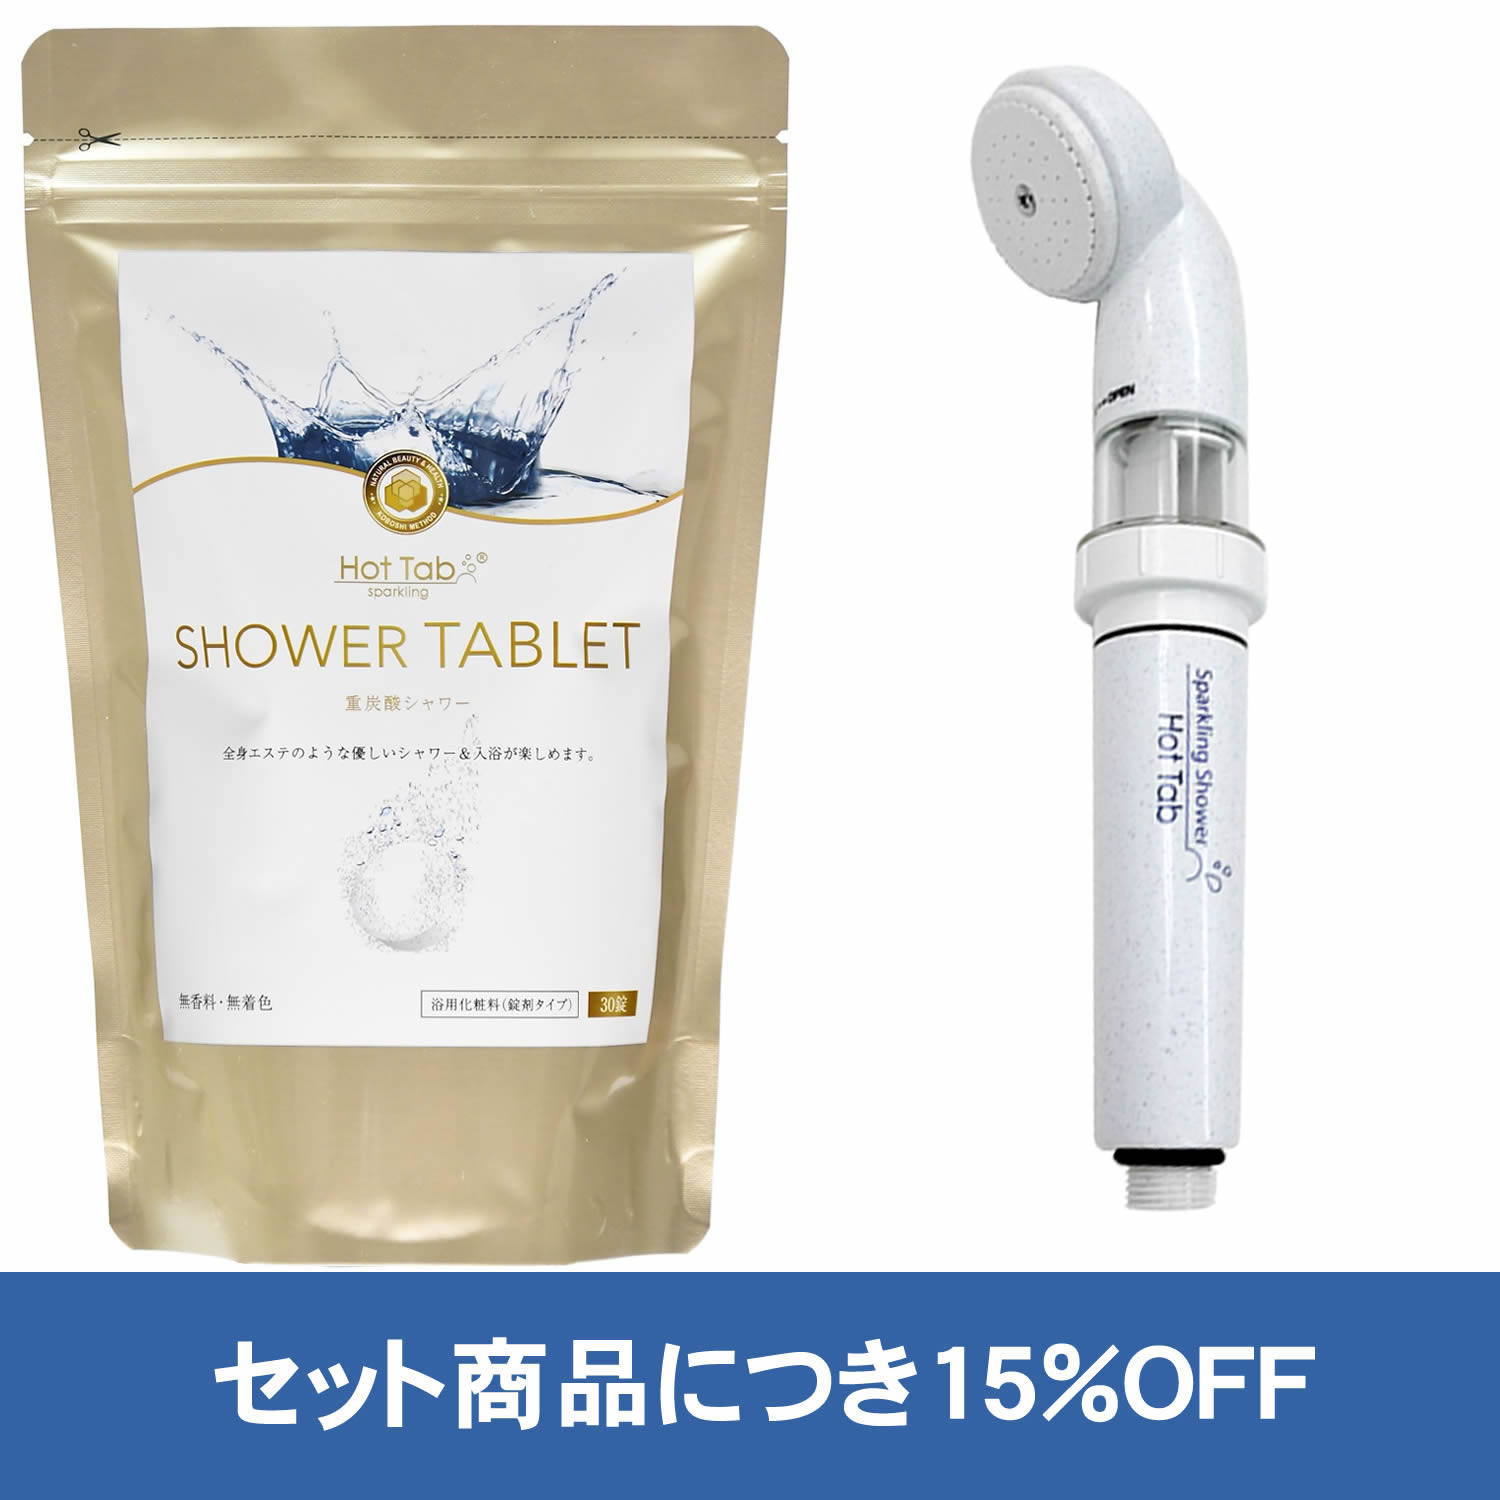 【公式】ホットタブ シャワータブレット SHOWER TAB